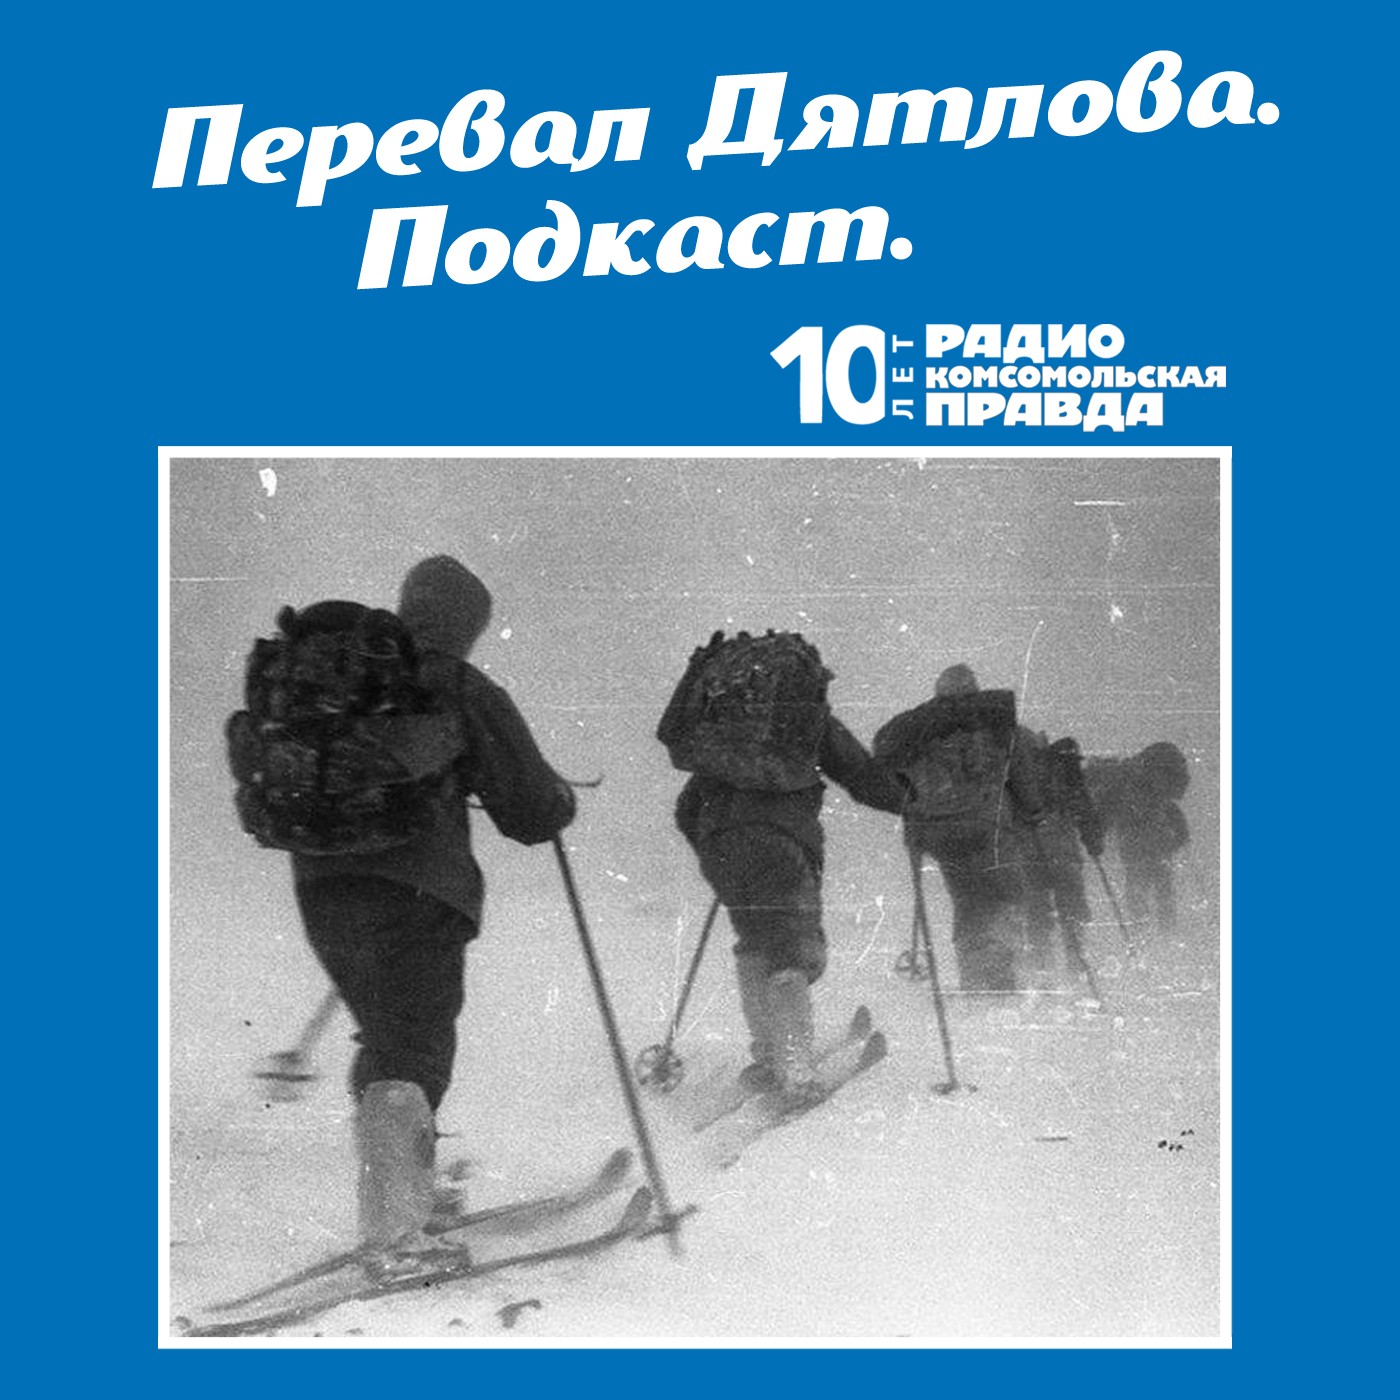 Скачать Трагедия на перевале Дятлова: 64 версии загадочной гибели туристов в 1959 году. Часть 103 и 104 - Радио «Комсомольская правда»